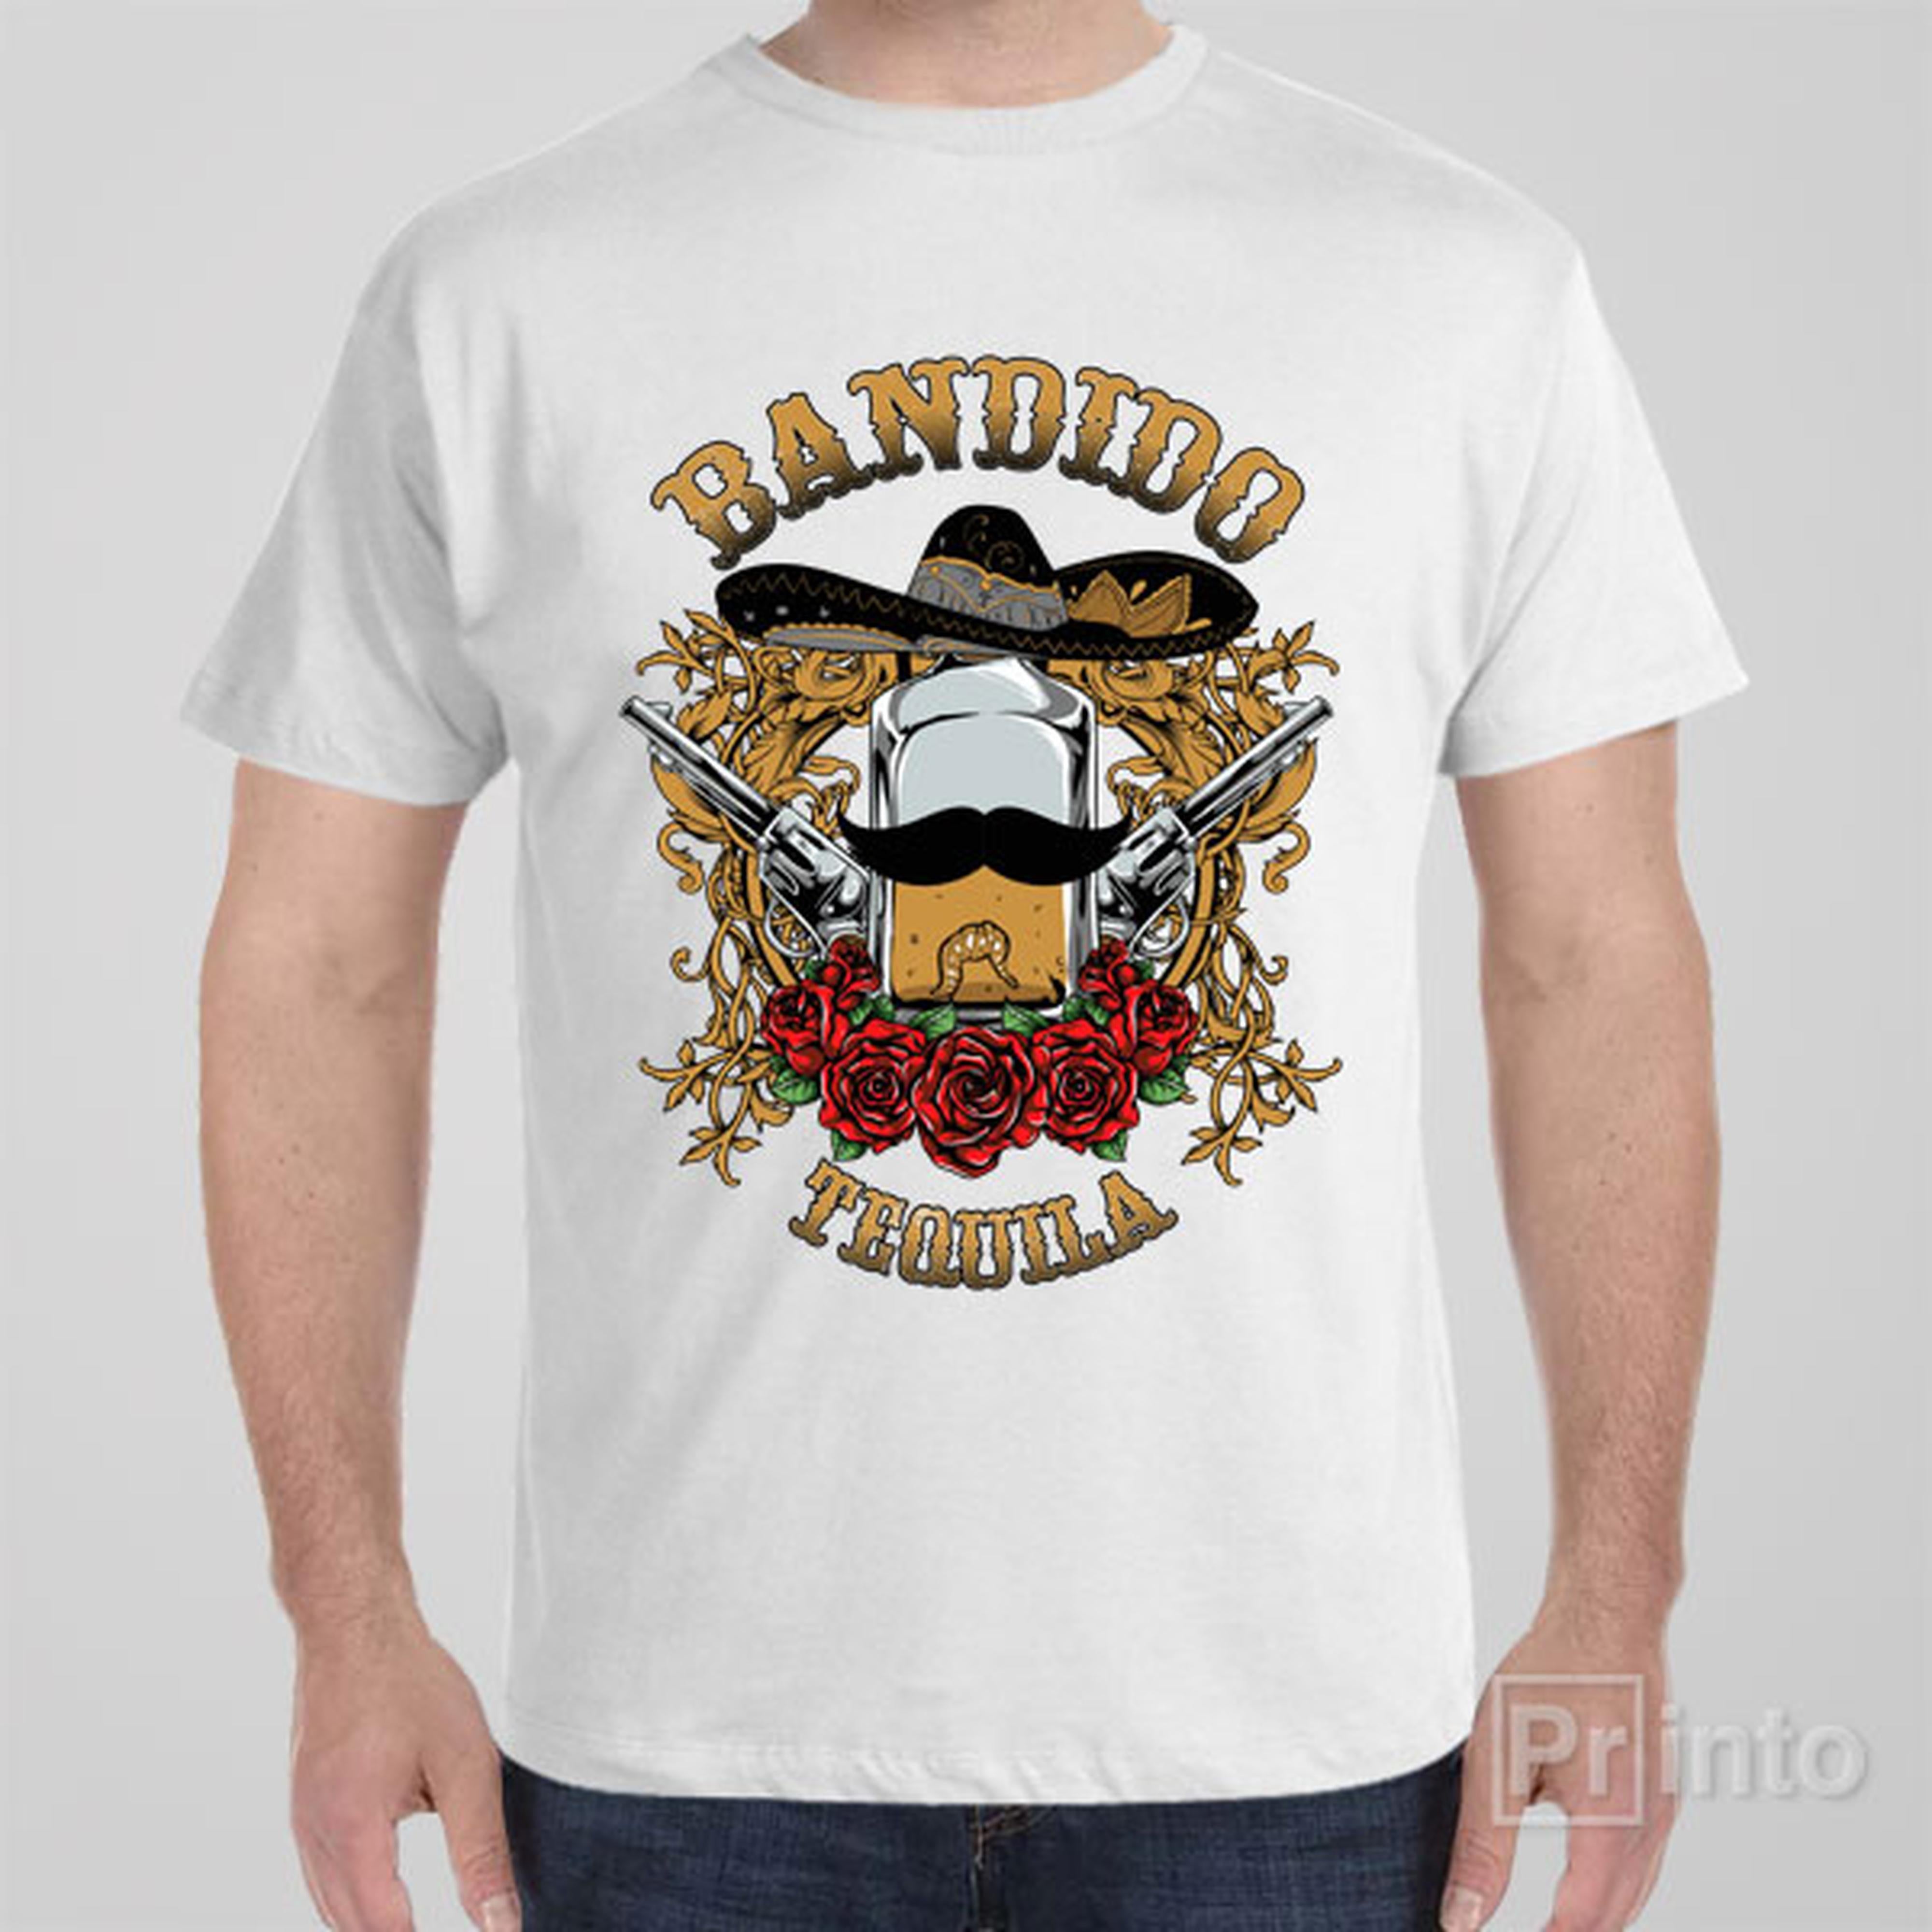 bandido-tequila-t-shirt